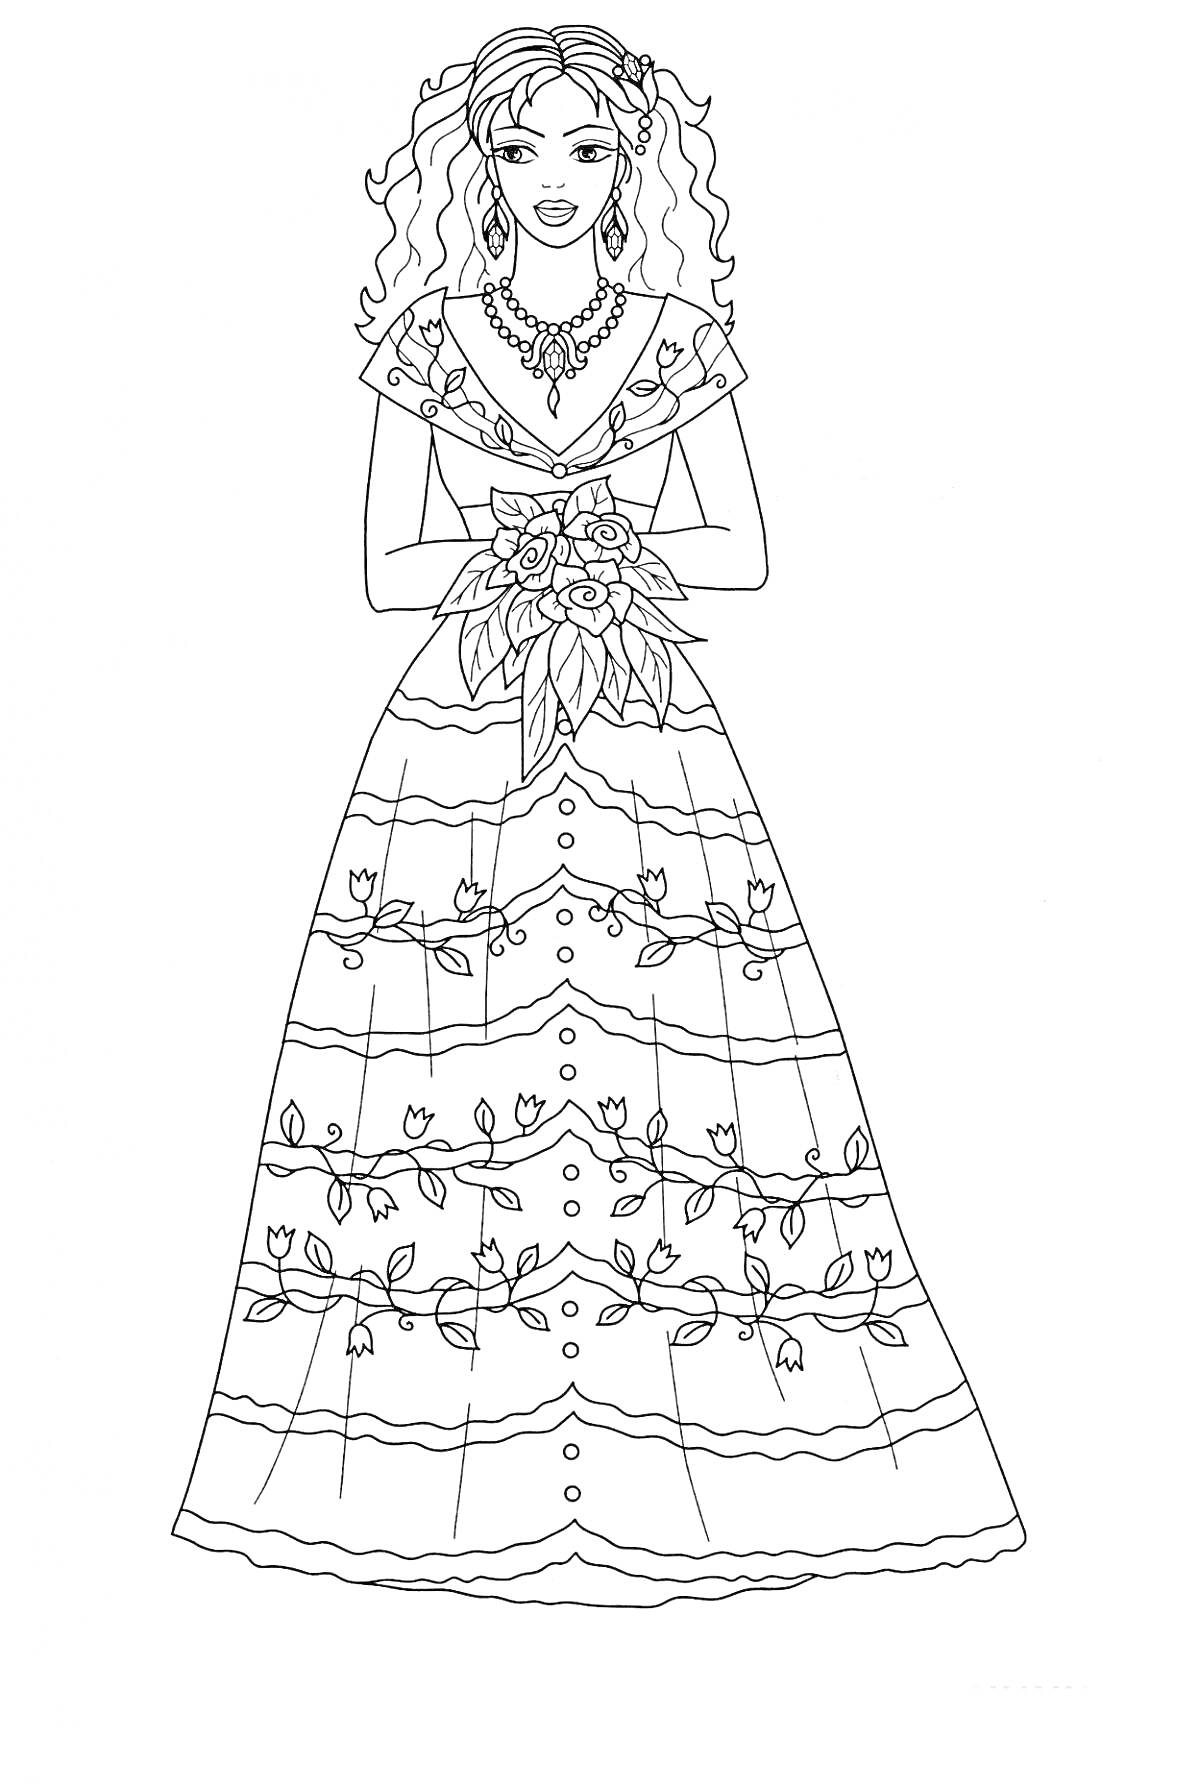 Раскраска Принцесса с длинными вьющимися волосами в платье с узором из цветов, держащая букет